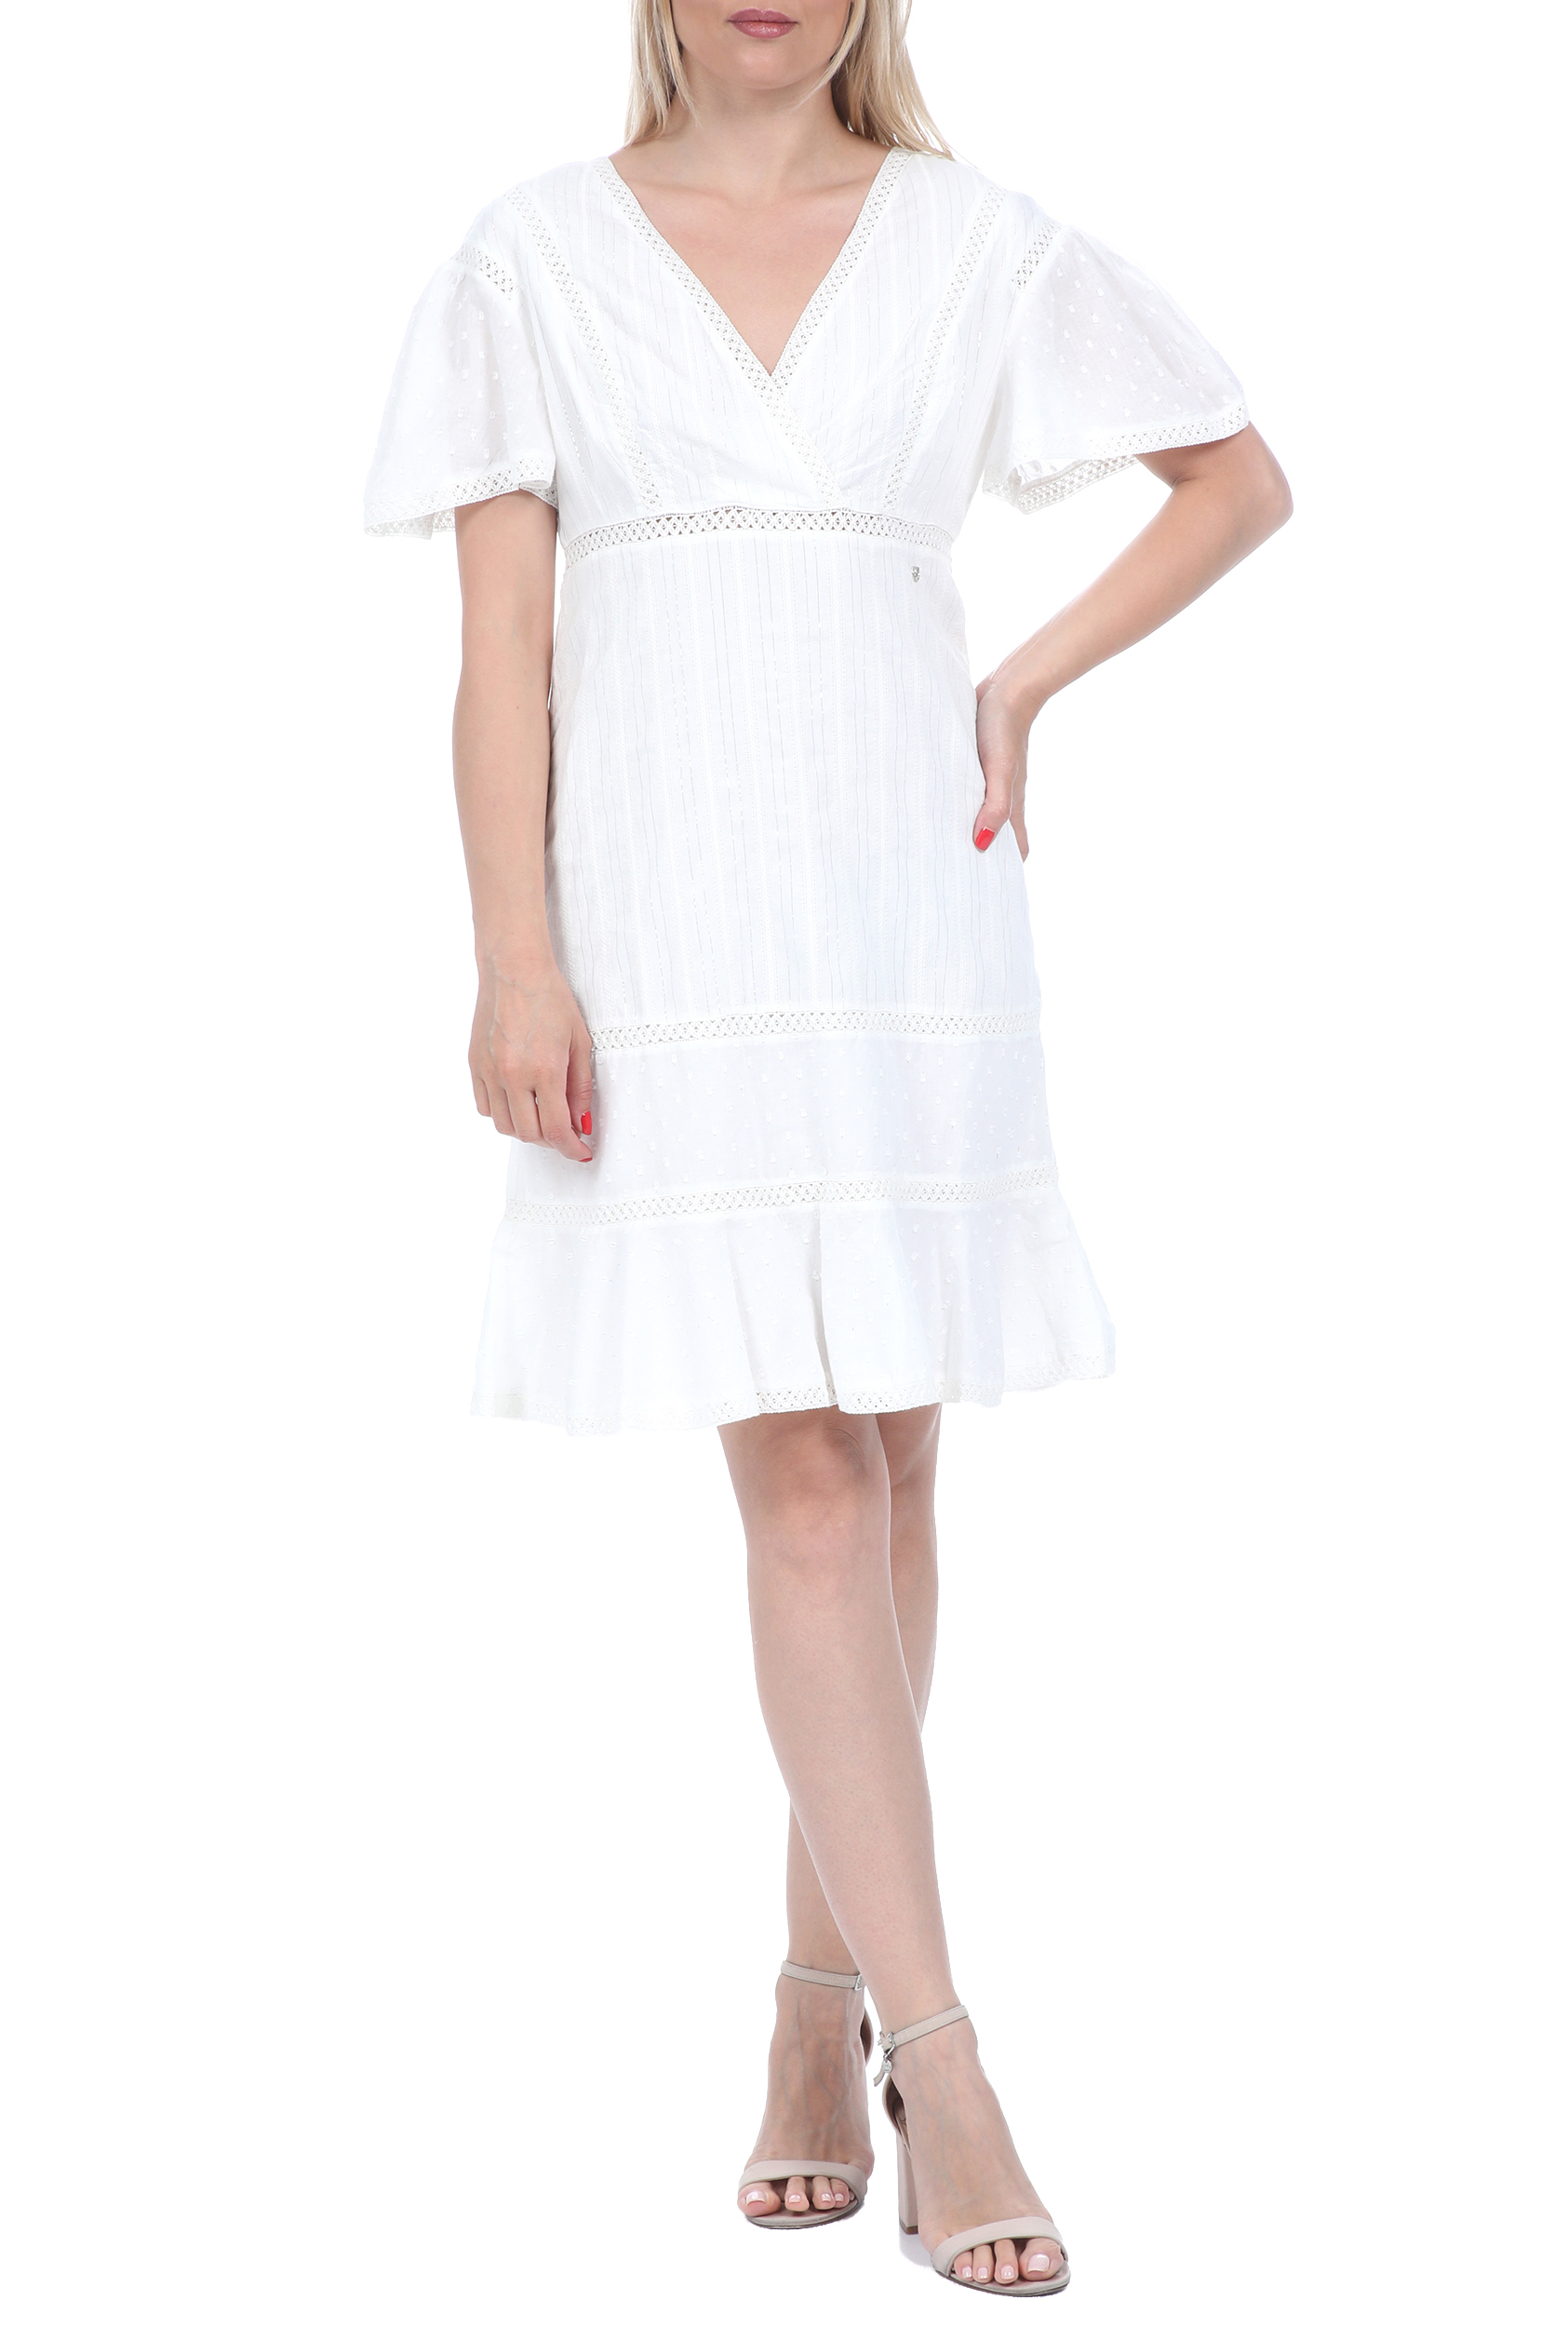 Γυναικεία/Ρούχα/Φόρεματα/Μίνι GAUDI - Γυναικείο mini φόρεμα GAUDI λευκό ασημί